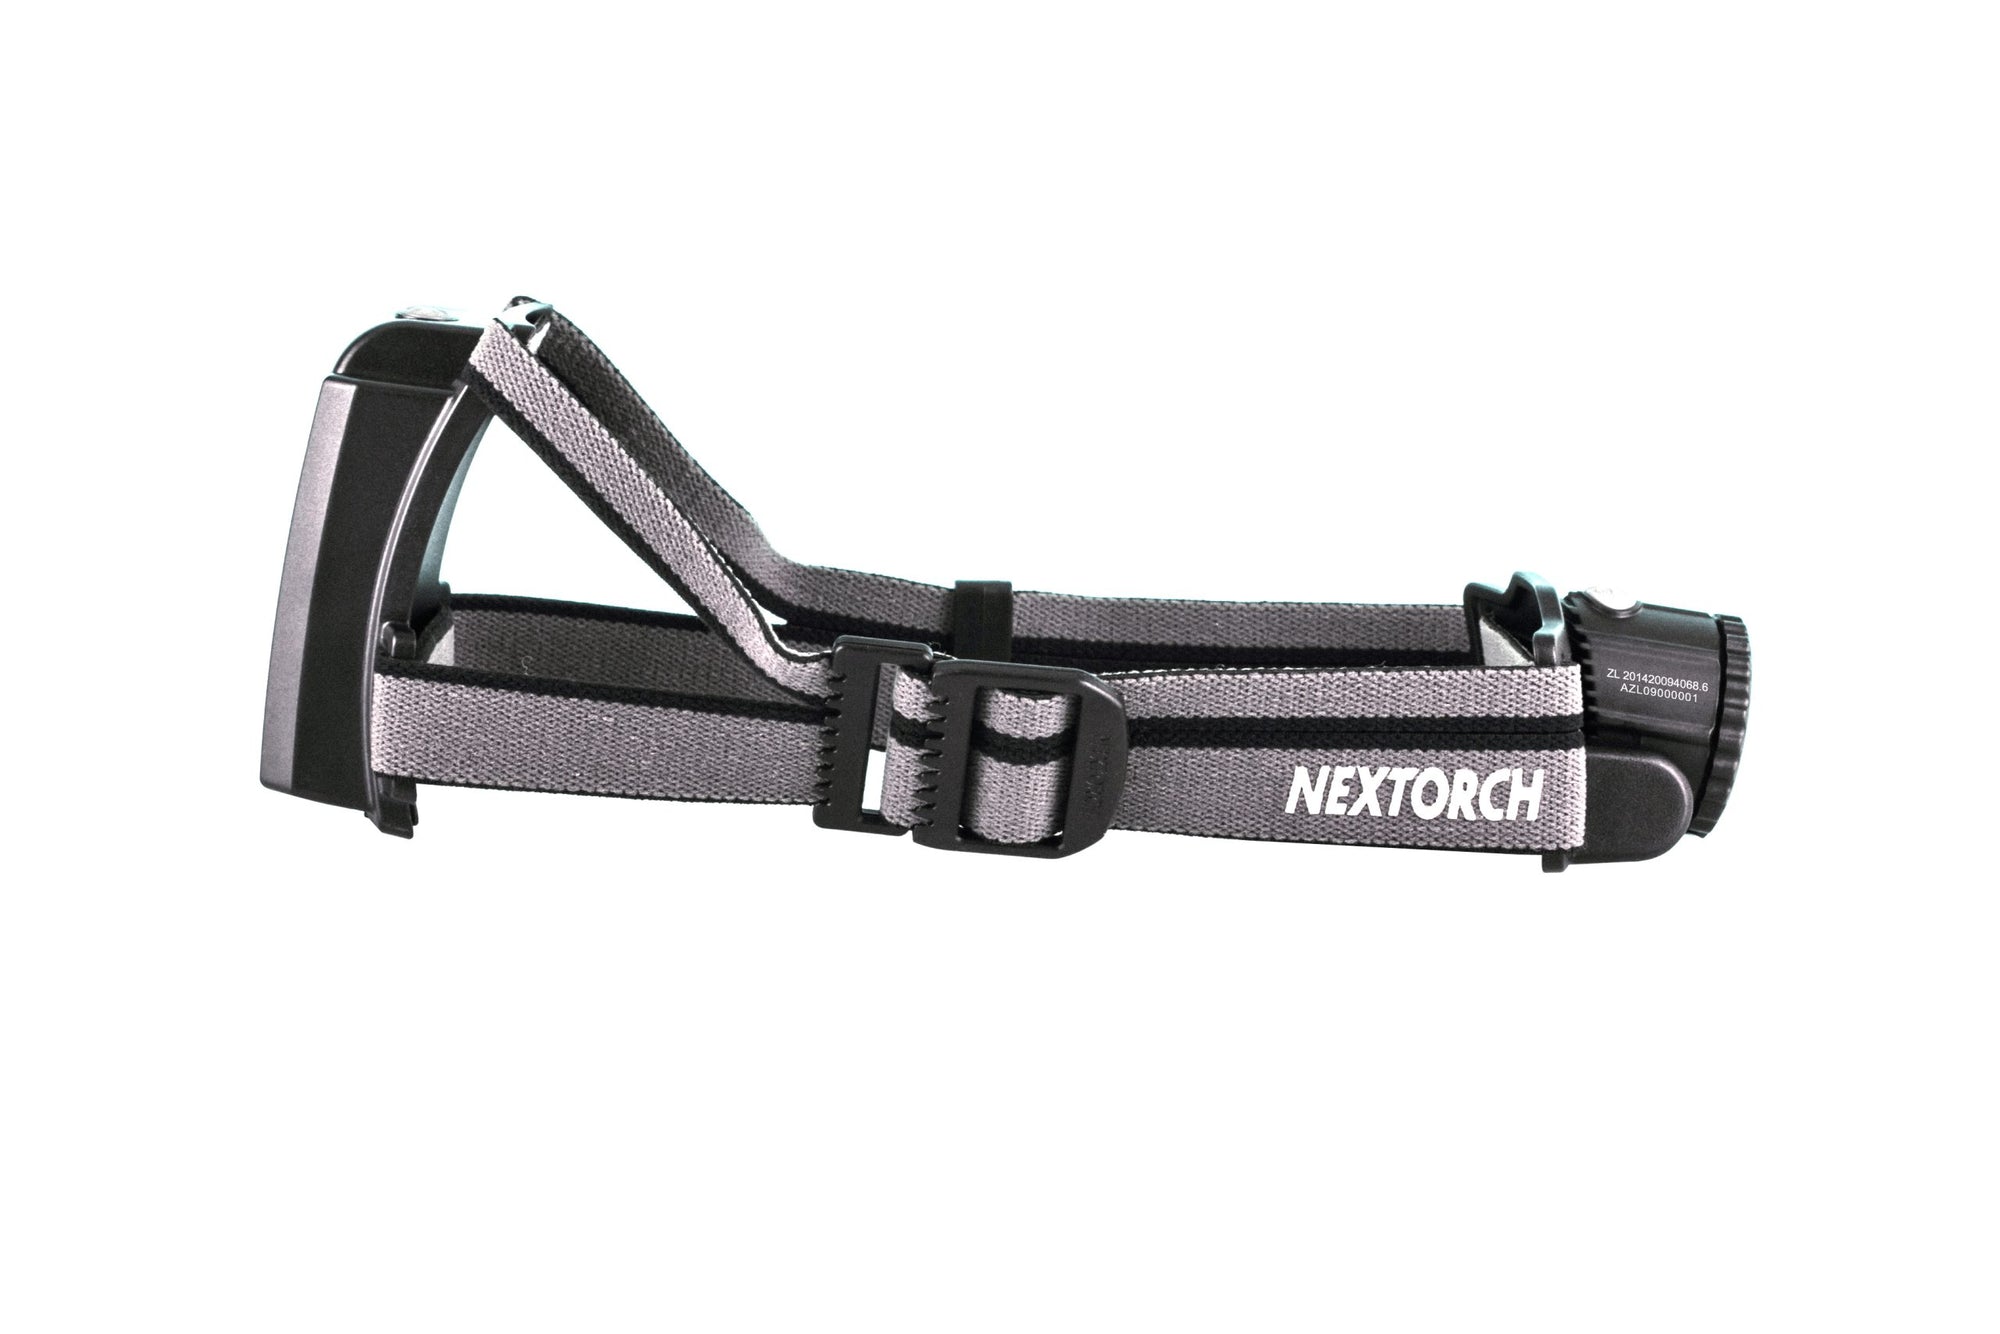 Nextorch H Series MyStar RAA Headlight 360 Focus Adjustable